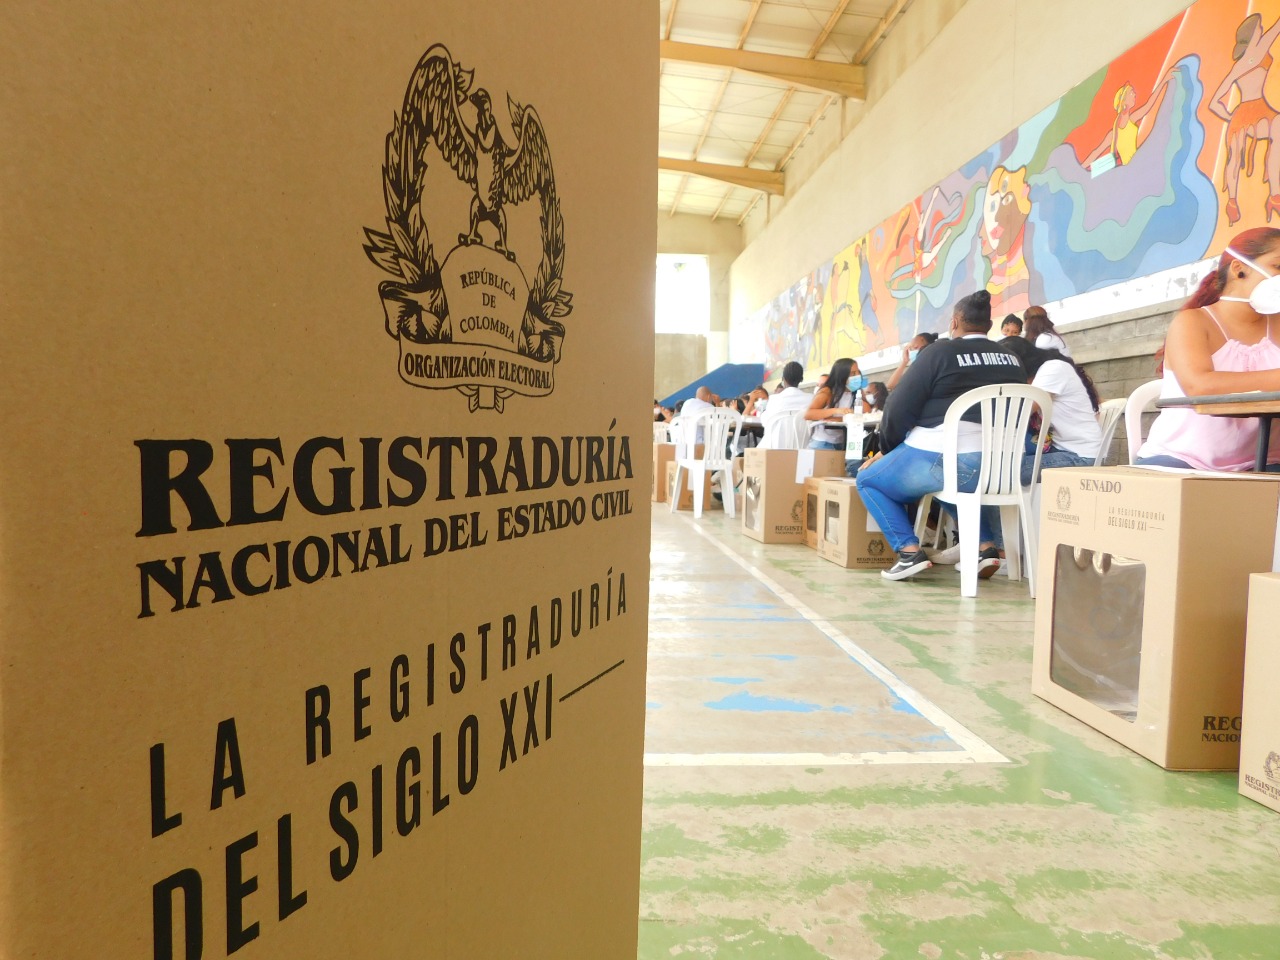 "Custodia de los votos se debe mantener de manera permanente": Mininterior